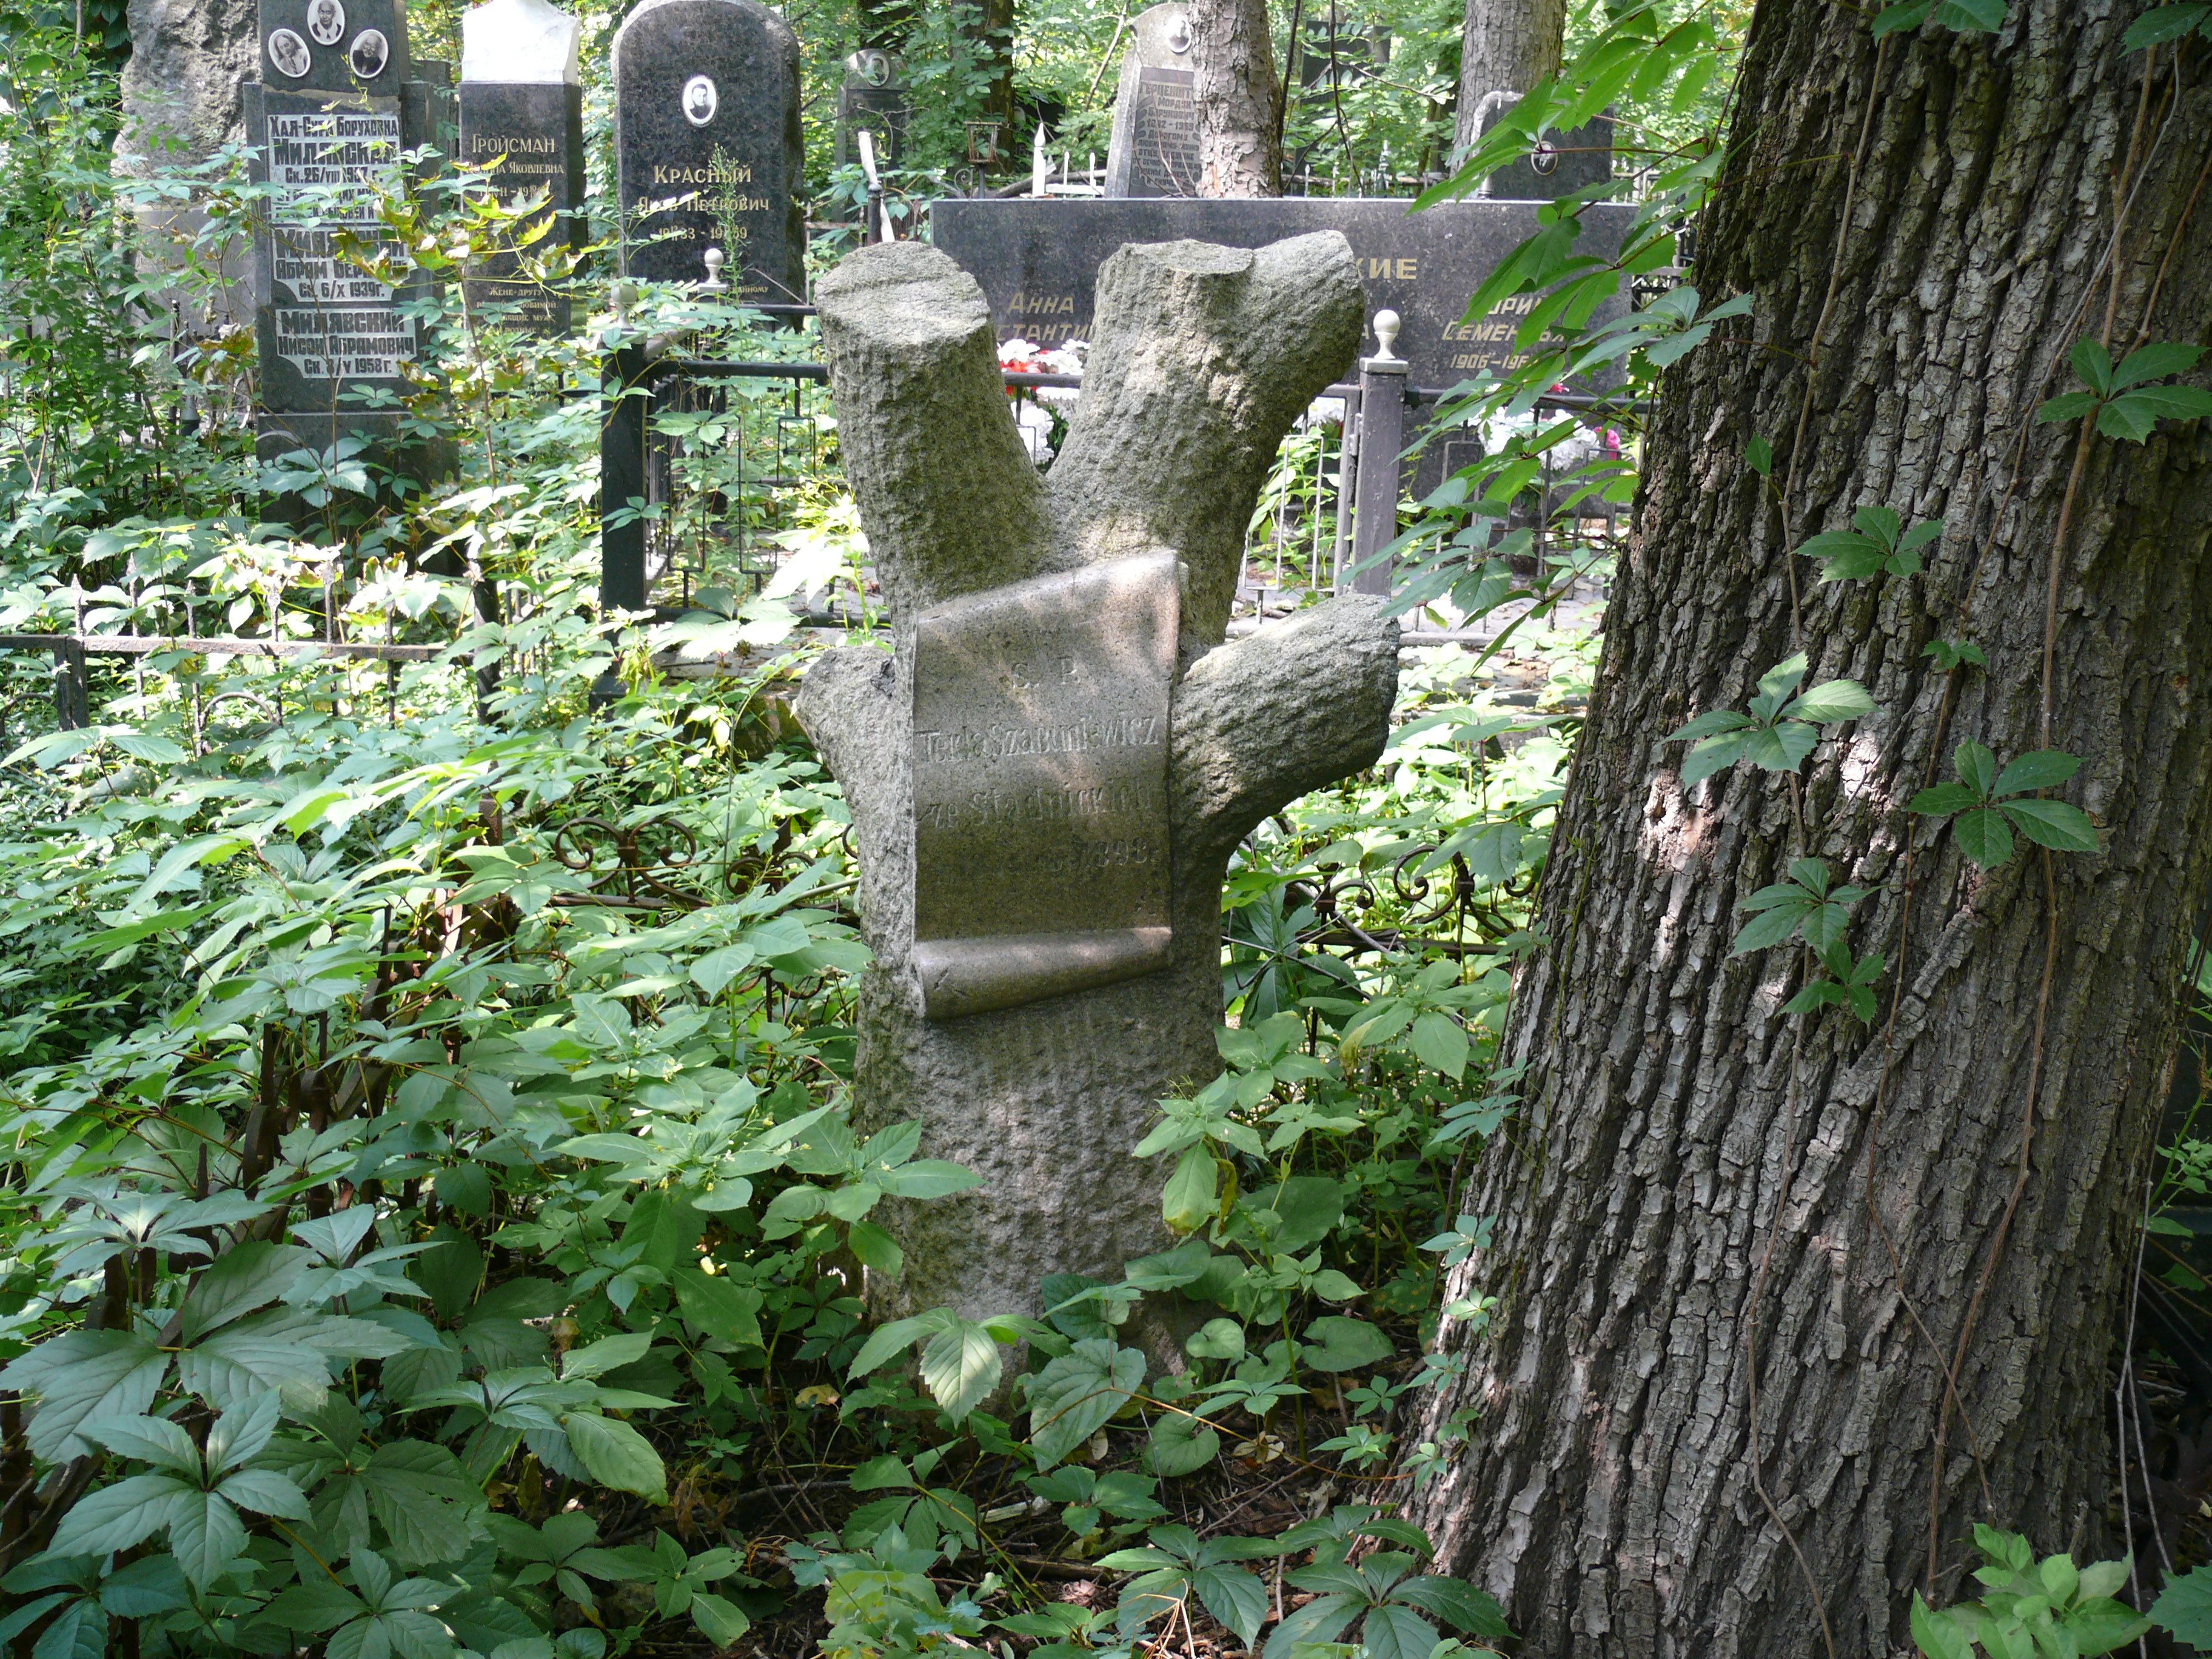 Tombstone of Tekla Szabuniewicz